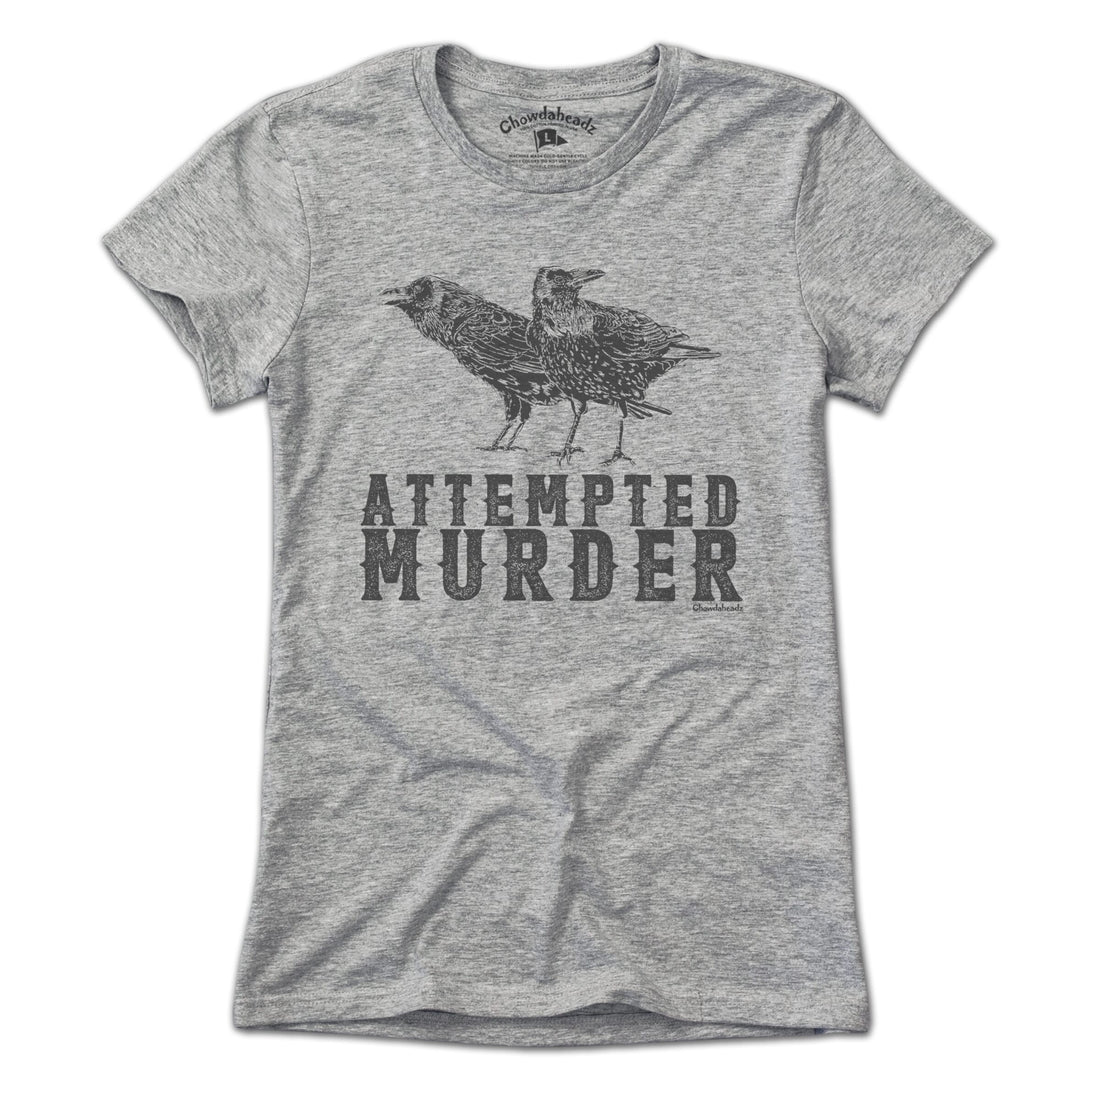 Attempted Murder T-Shirt - Chowdaheadz